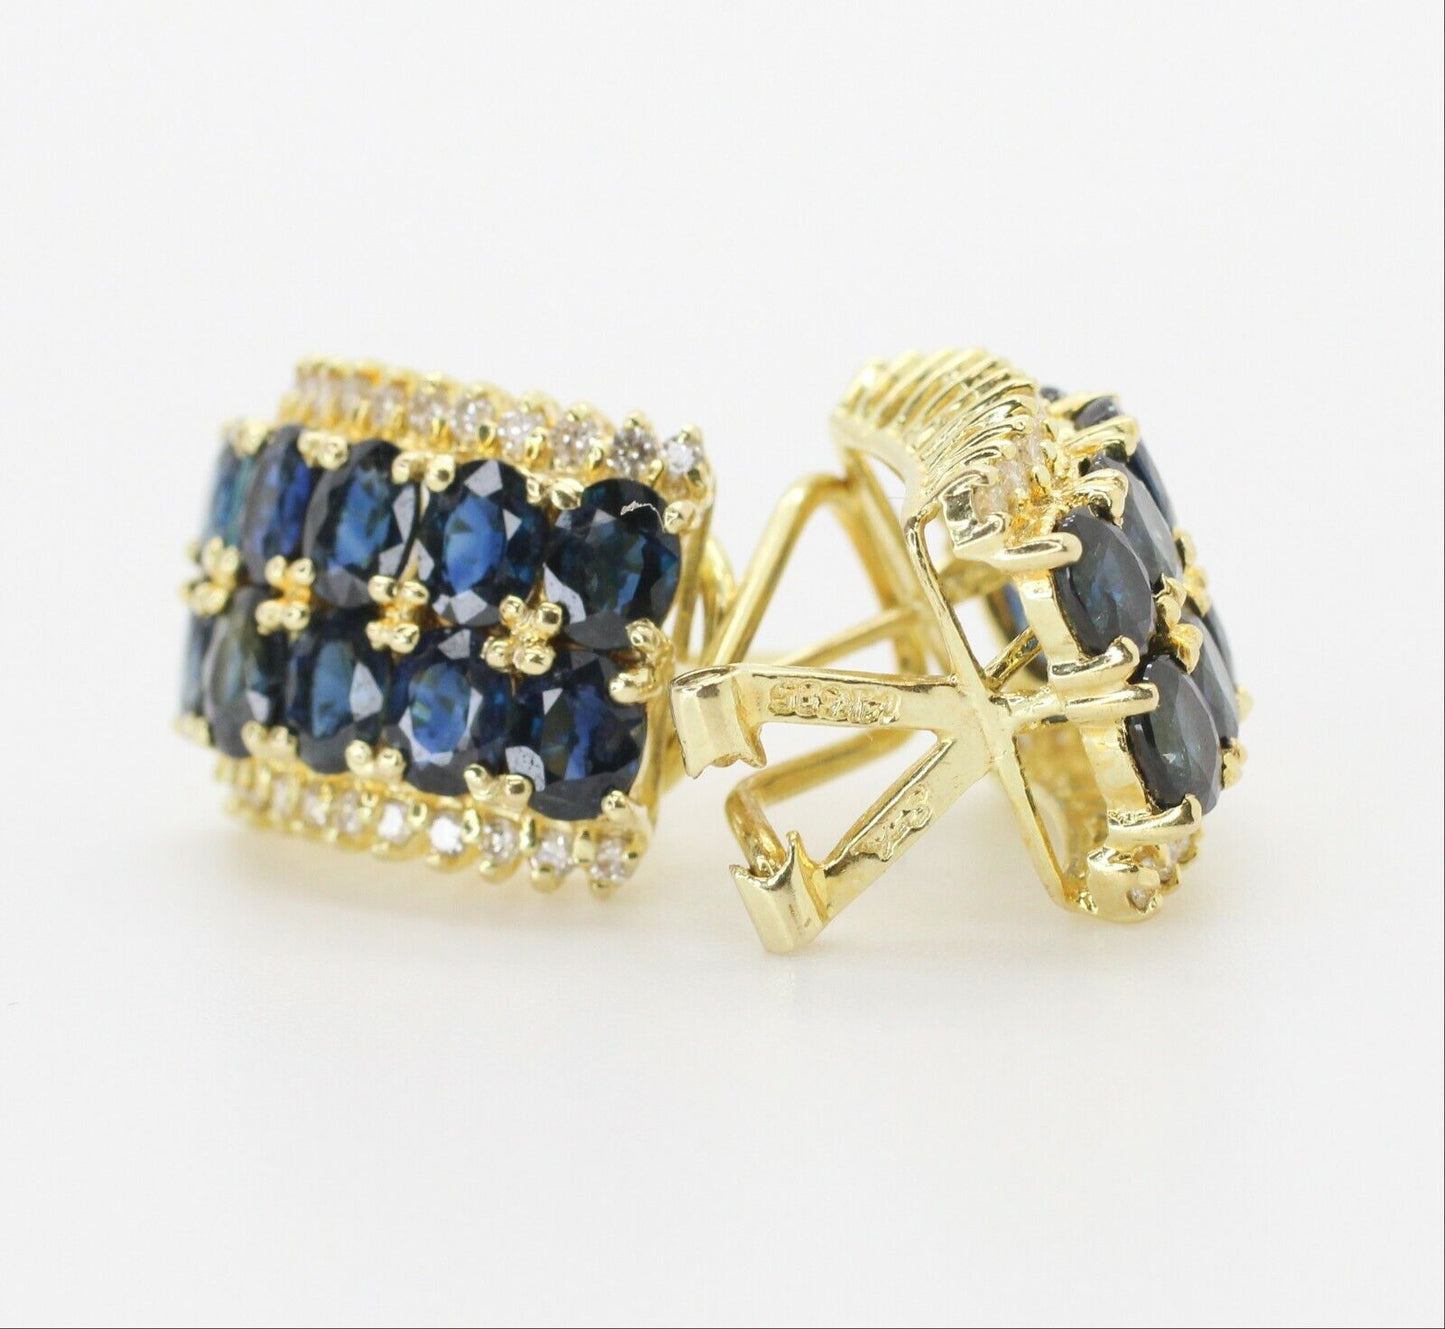 Oval Cut Blue Sapphire & Diamond Huggie Earrings Leverback in 14k Yellow Gold